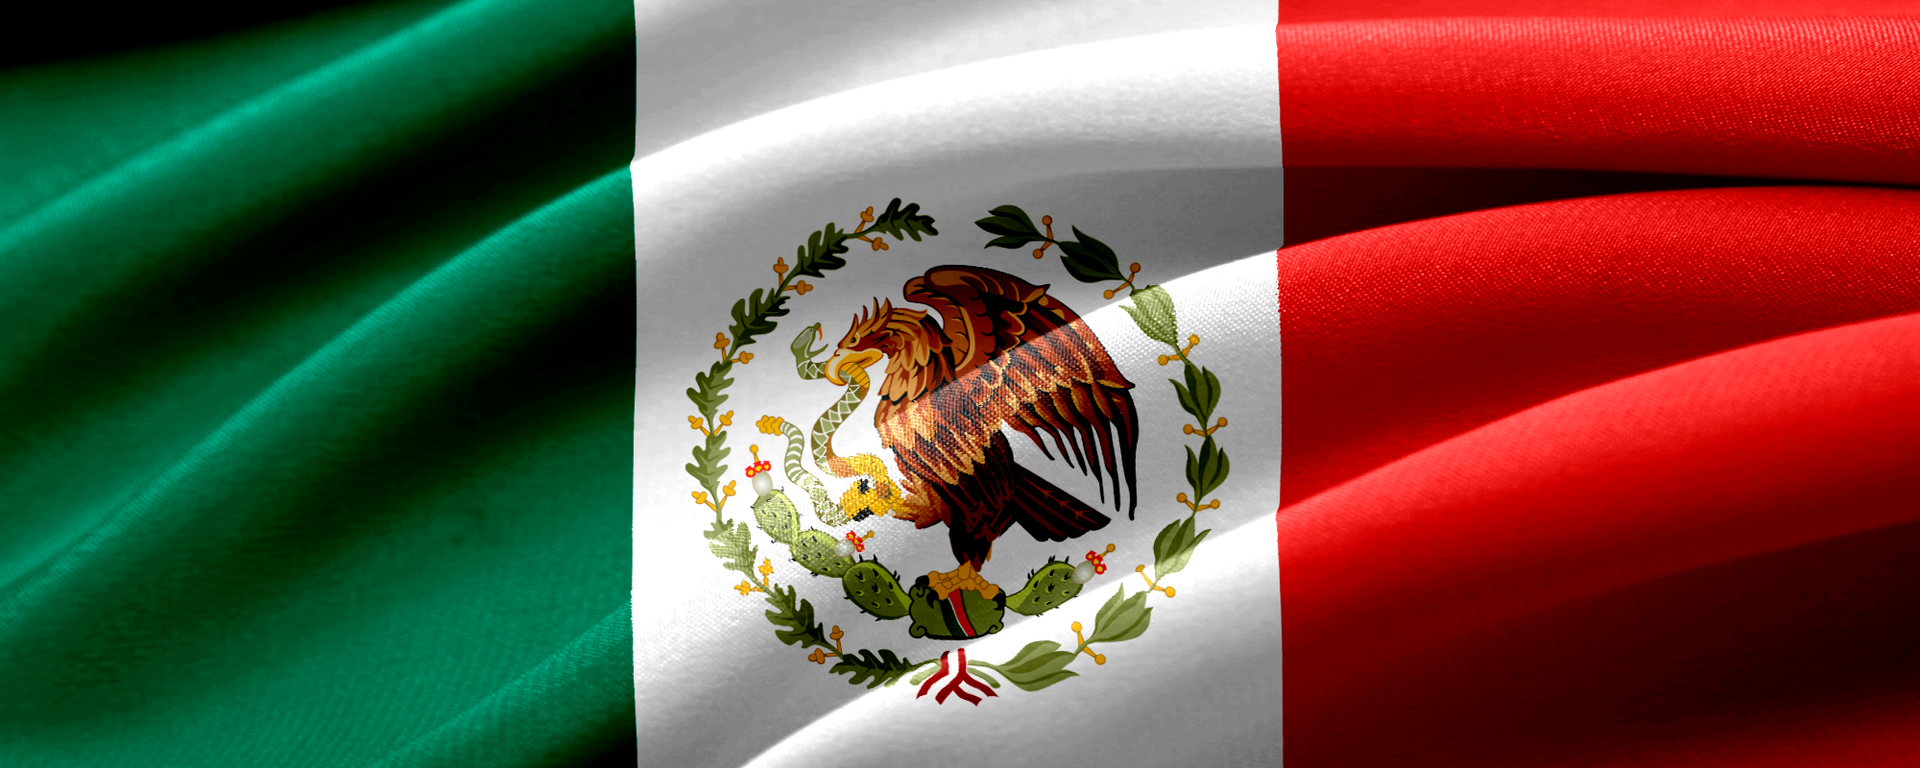 Bandera de México - Sputnik Mundo, 1920, 20.11.2020